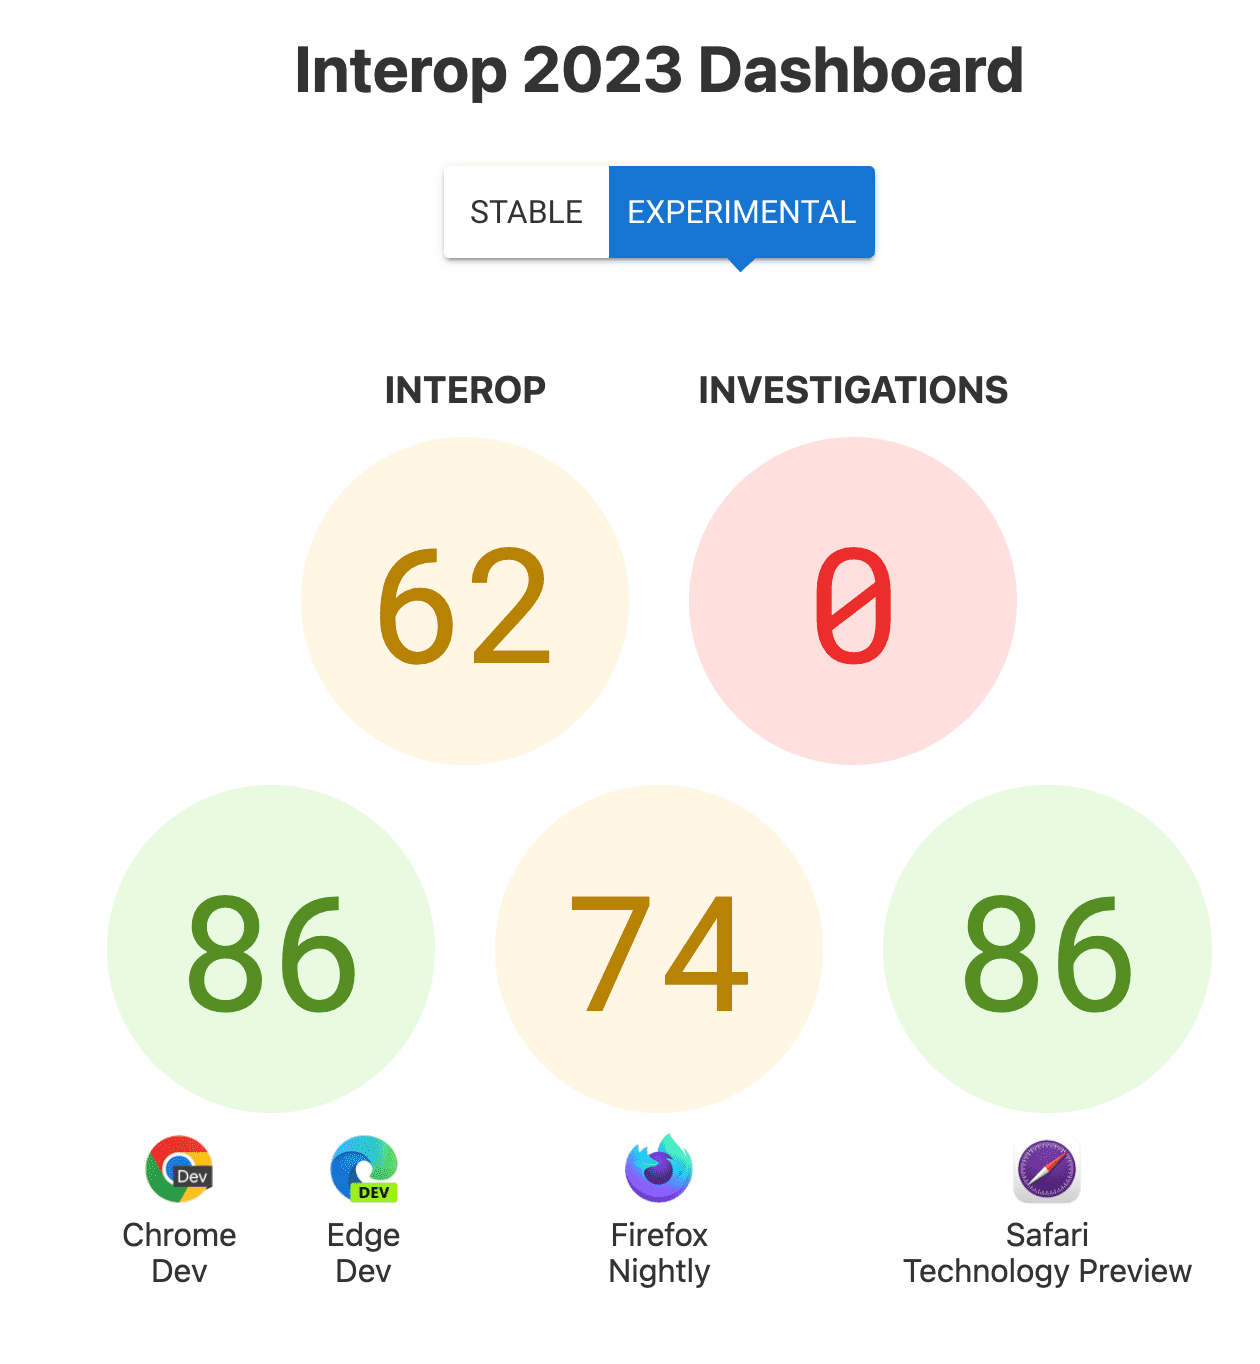 คะแนนการทำงานร่วมกันโดยรวมคือ 62, การตรวจสอบ: 0, คะแนนต่อเบราว์เซอร์, 86 คะแนนสำหรับ Chrome และ Edge, 74 สำหรับ Firefox, 86 สำหรับ Safari Technology Preview